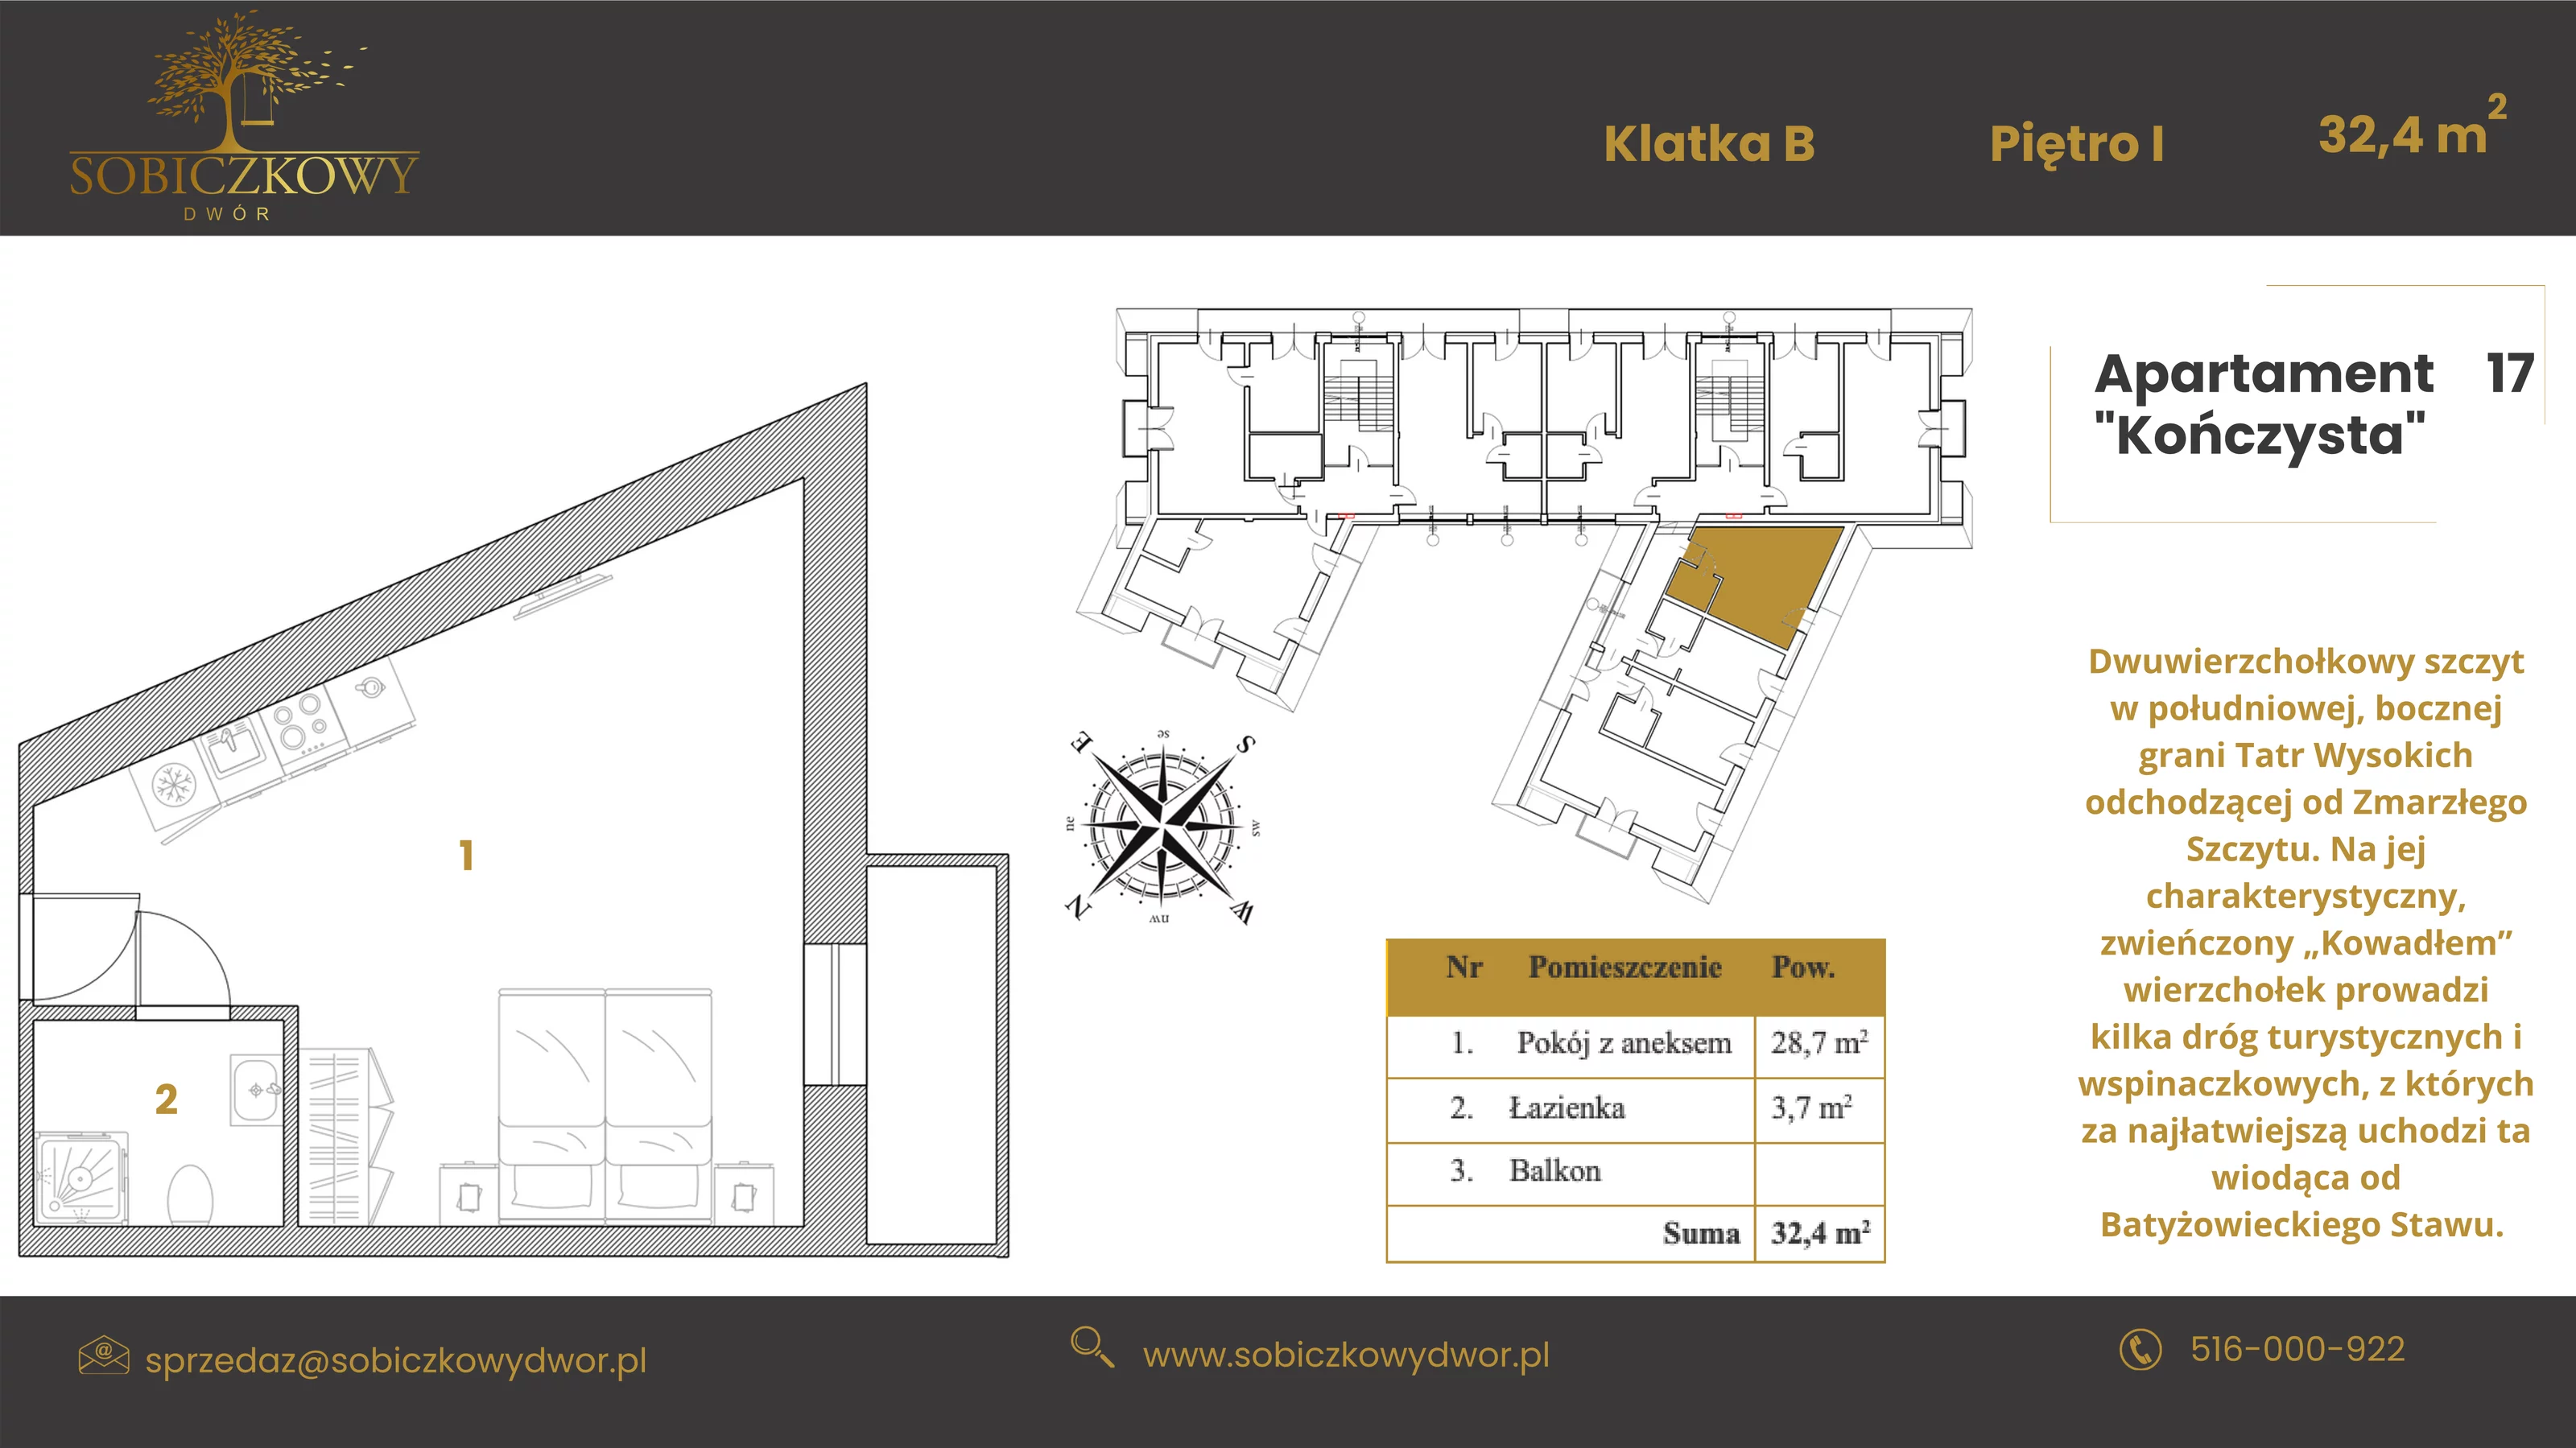 Apartament 32,50 m², piętro 1, oferta nr 17 "Kończysta", Sobiczkowy Dwór, Kościelisko, ul. Sobiczkowa Bór 1